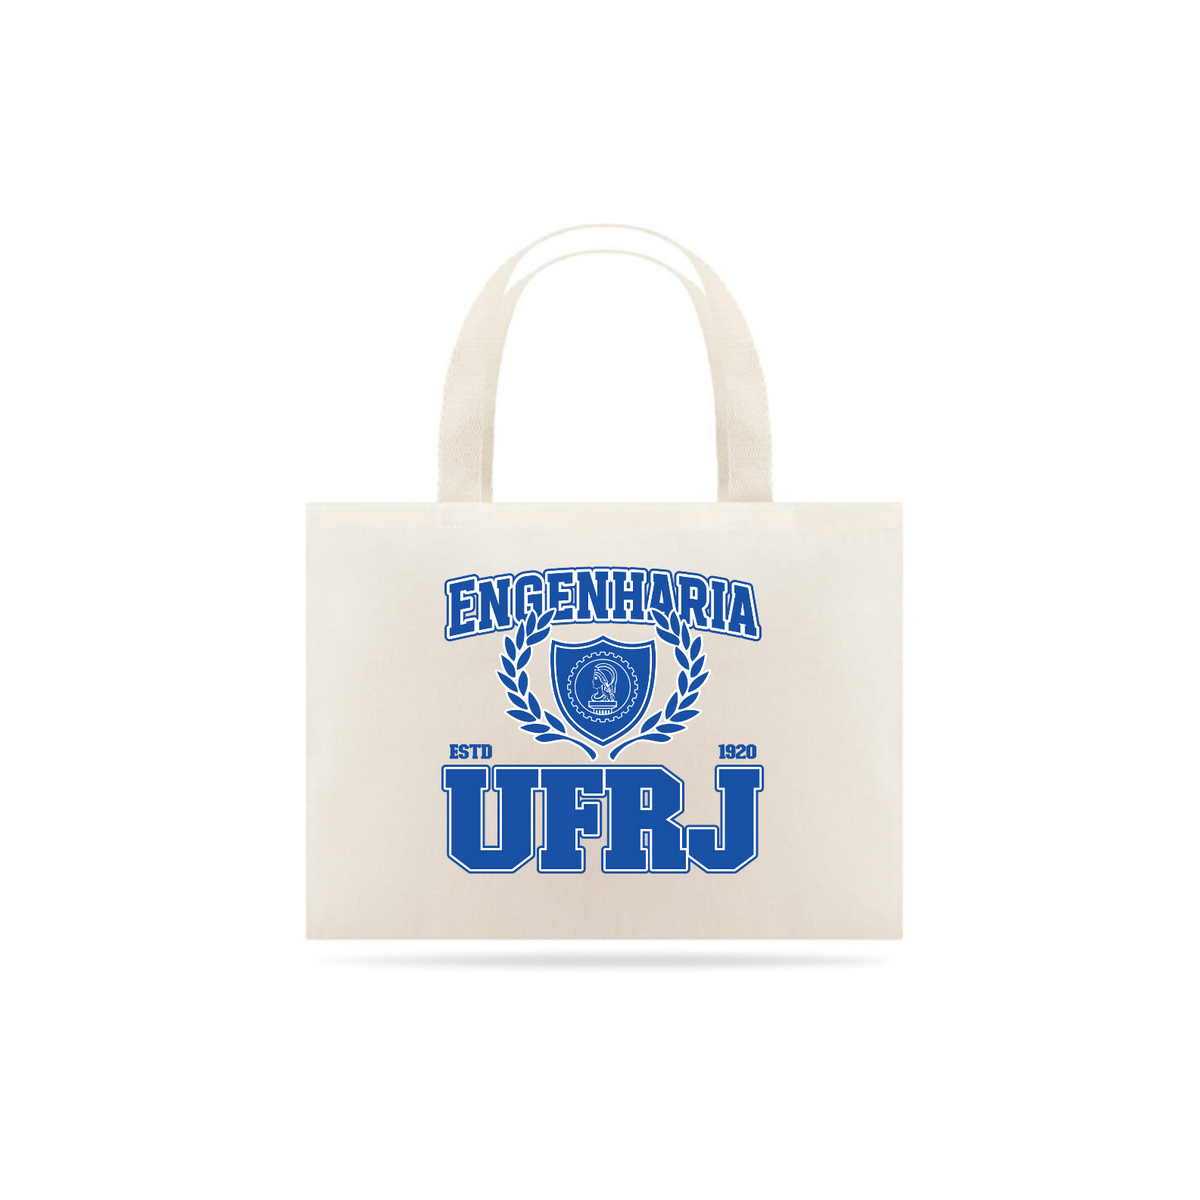 Nome do produto: UniVerso - Ecobag Engenharia UFRJ 